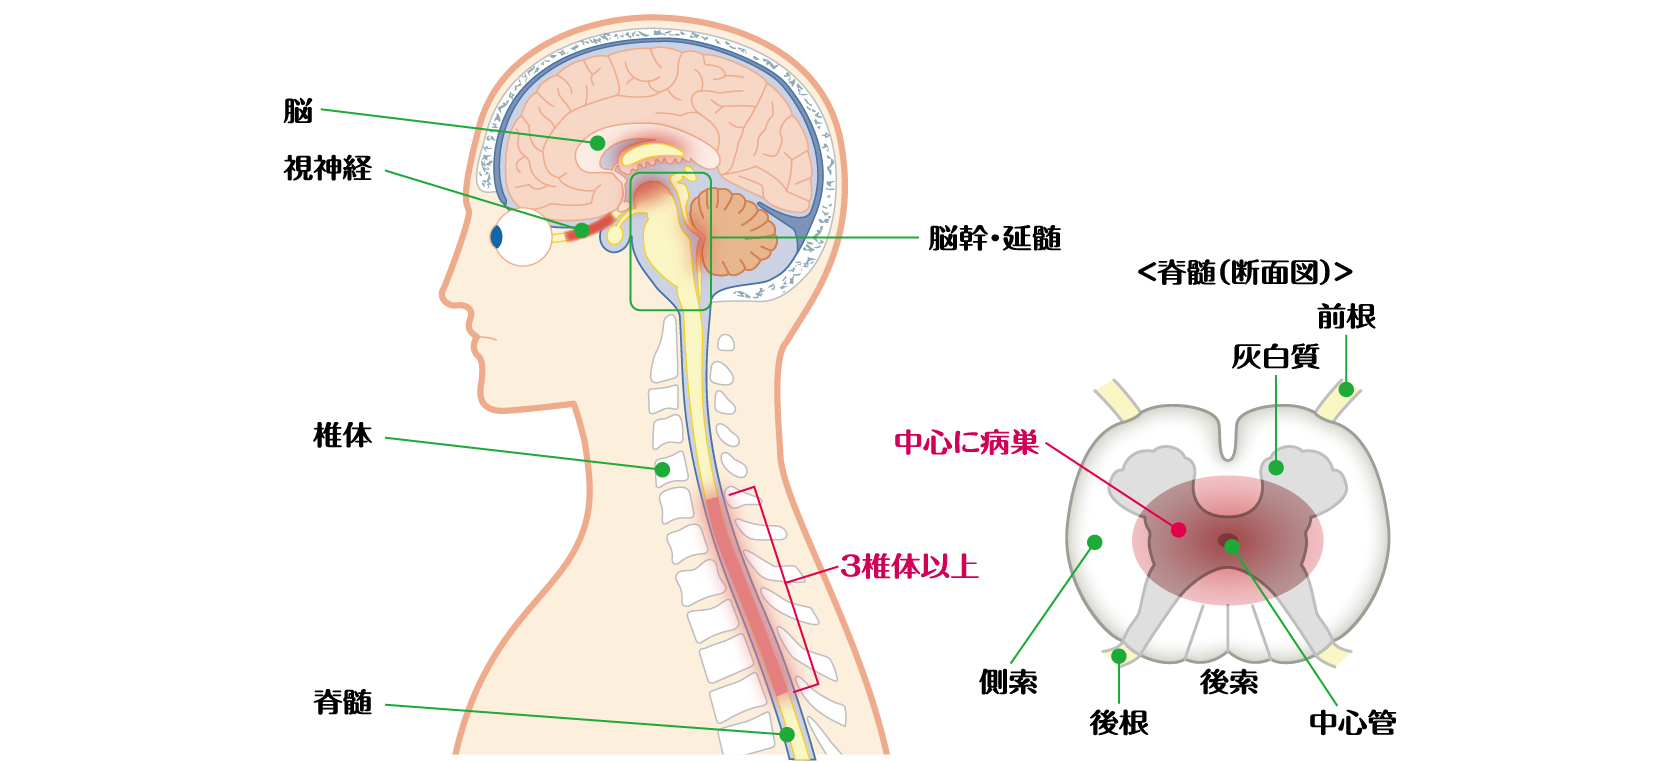 脳、視神経、脳幹・延髄、椎体、脊髄、そのうち3椎体以上の長い病変のイメージ図。脊髄断面図、前根、灰白質、側索、後根、後索、中心管、その中心に病巣があるイメージ図。